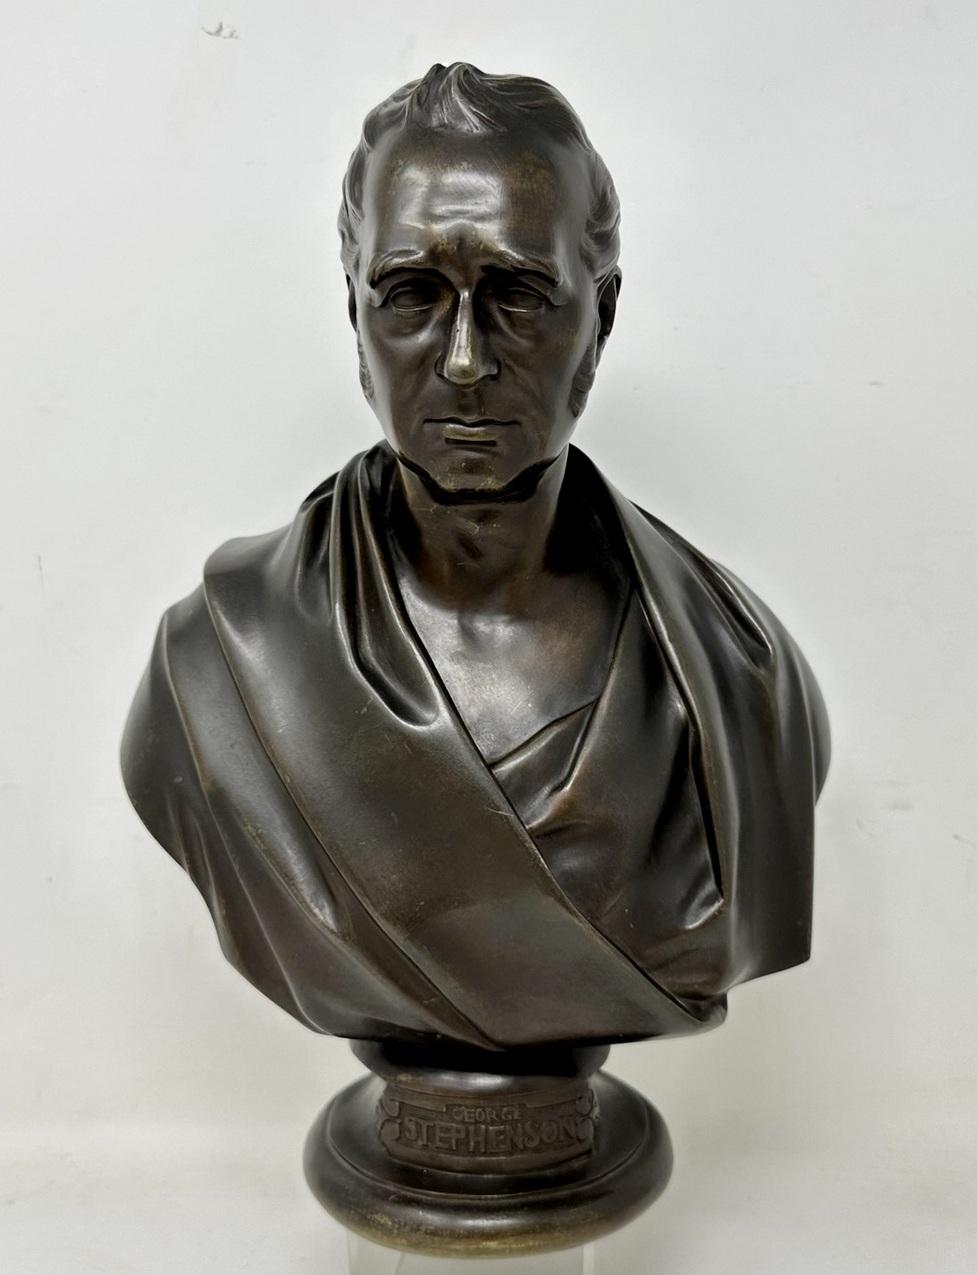 Eine sehr beeindruckende und hervorragend gegossene, patinierte Bronzebüste von George Stephenson, mit großzügigen Proportionen. Mitte des neunzehnten Jahrhunderts. Graviert E W Wyon Sculptor und datiert 1858 auch graviert DELPECH RED.  

Bekleidet